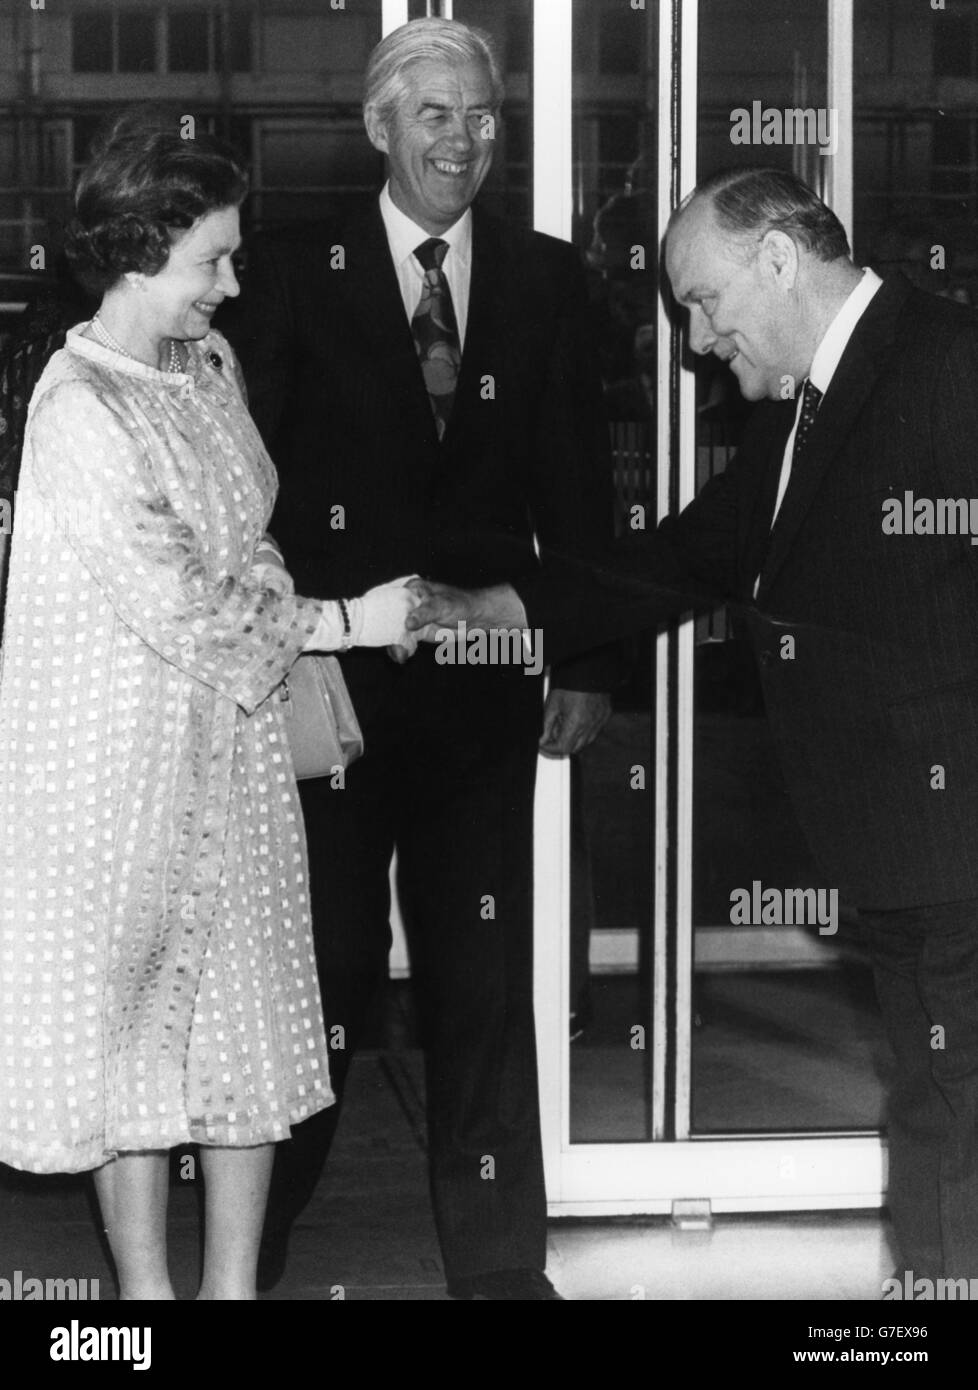 La regina Elisabetta II stringe le mani con Robert Muldoon, primo ministro della Nuova Zelanda, seguito dall'Alto commissario Leslie Gandar. Un ricevimento si è tenuto presso la New Zealand House di Haymarket per celebrare l'arrivo a Londra della prima spedizione refrigerata di agnello neozelandese 100 anni fa. Foto Stock